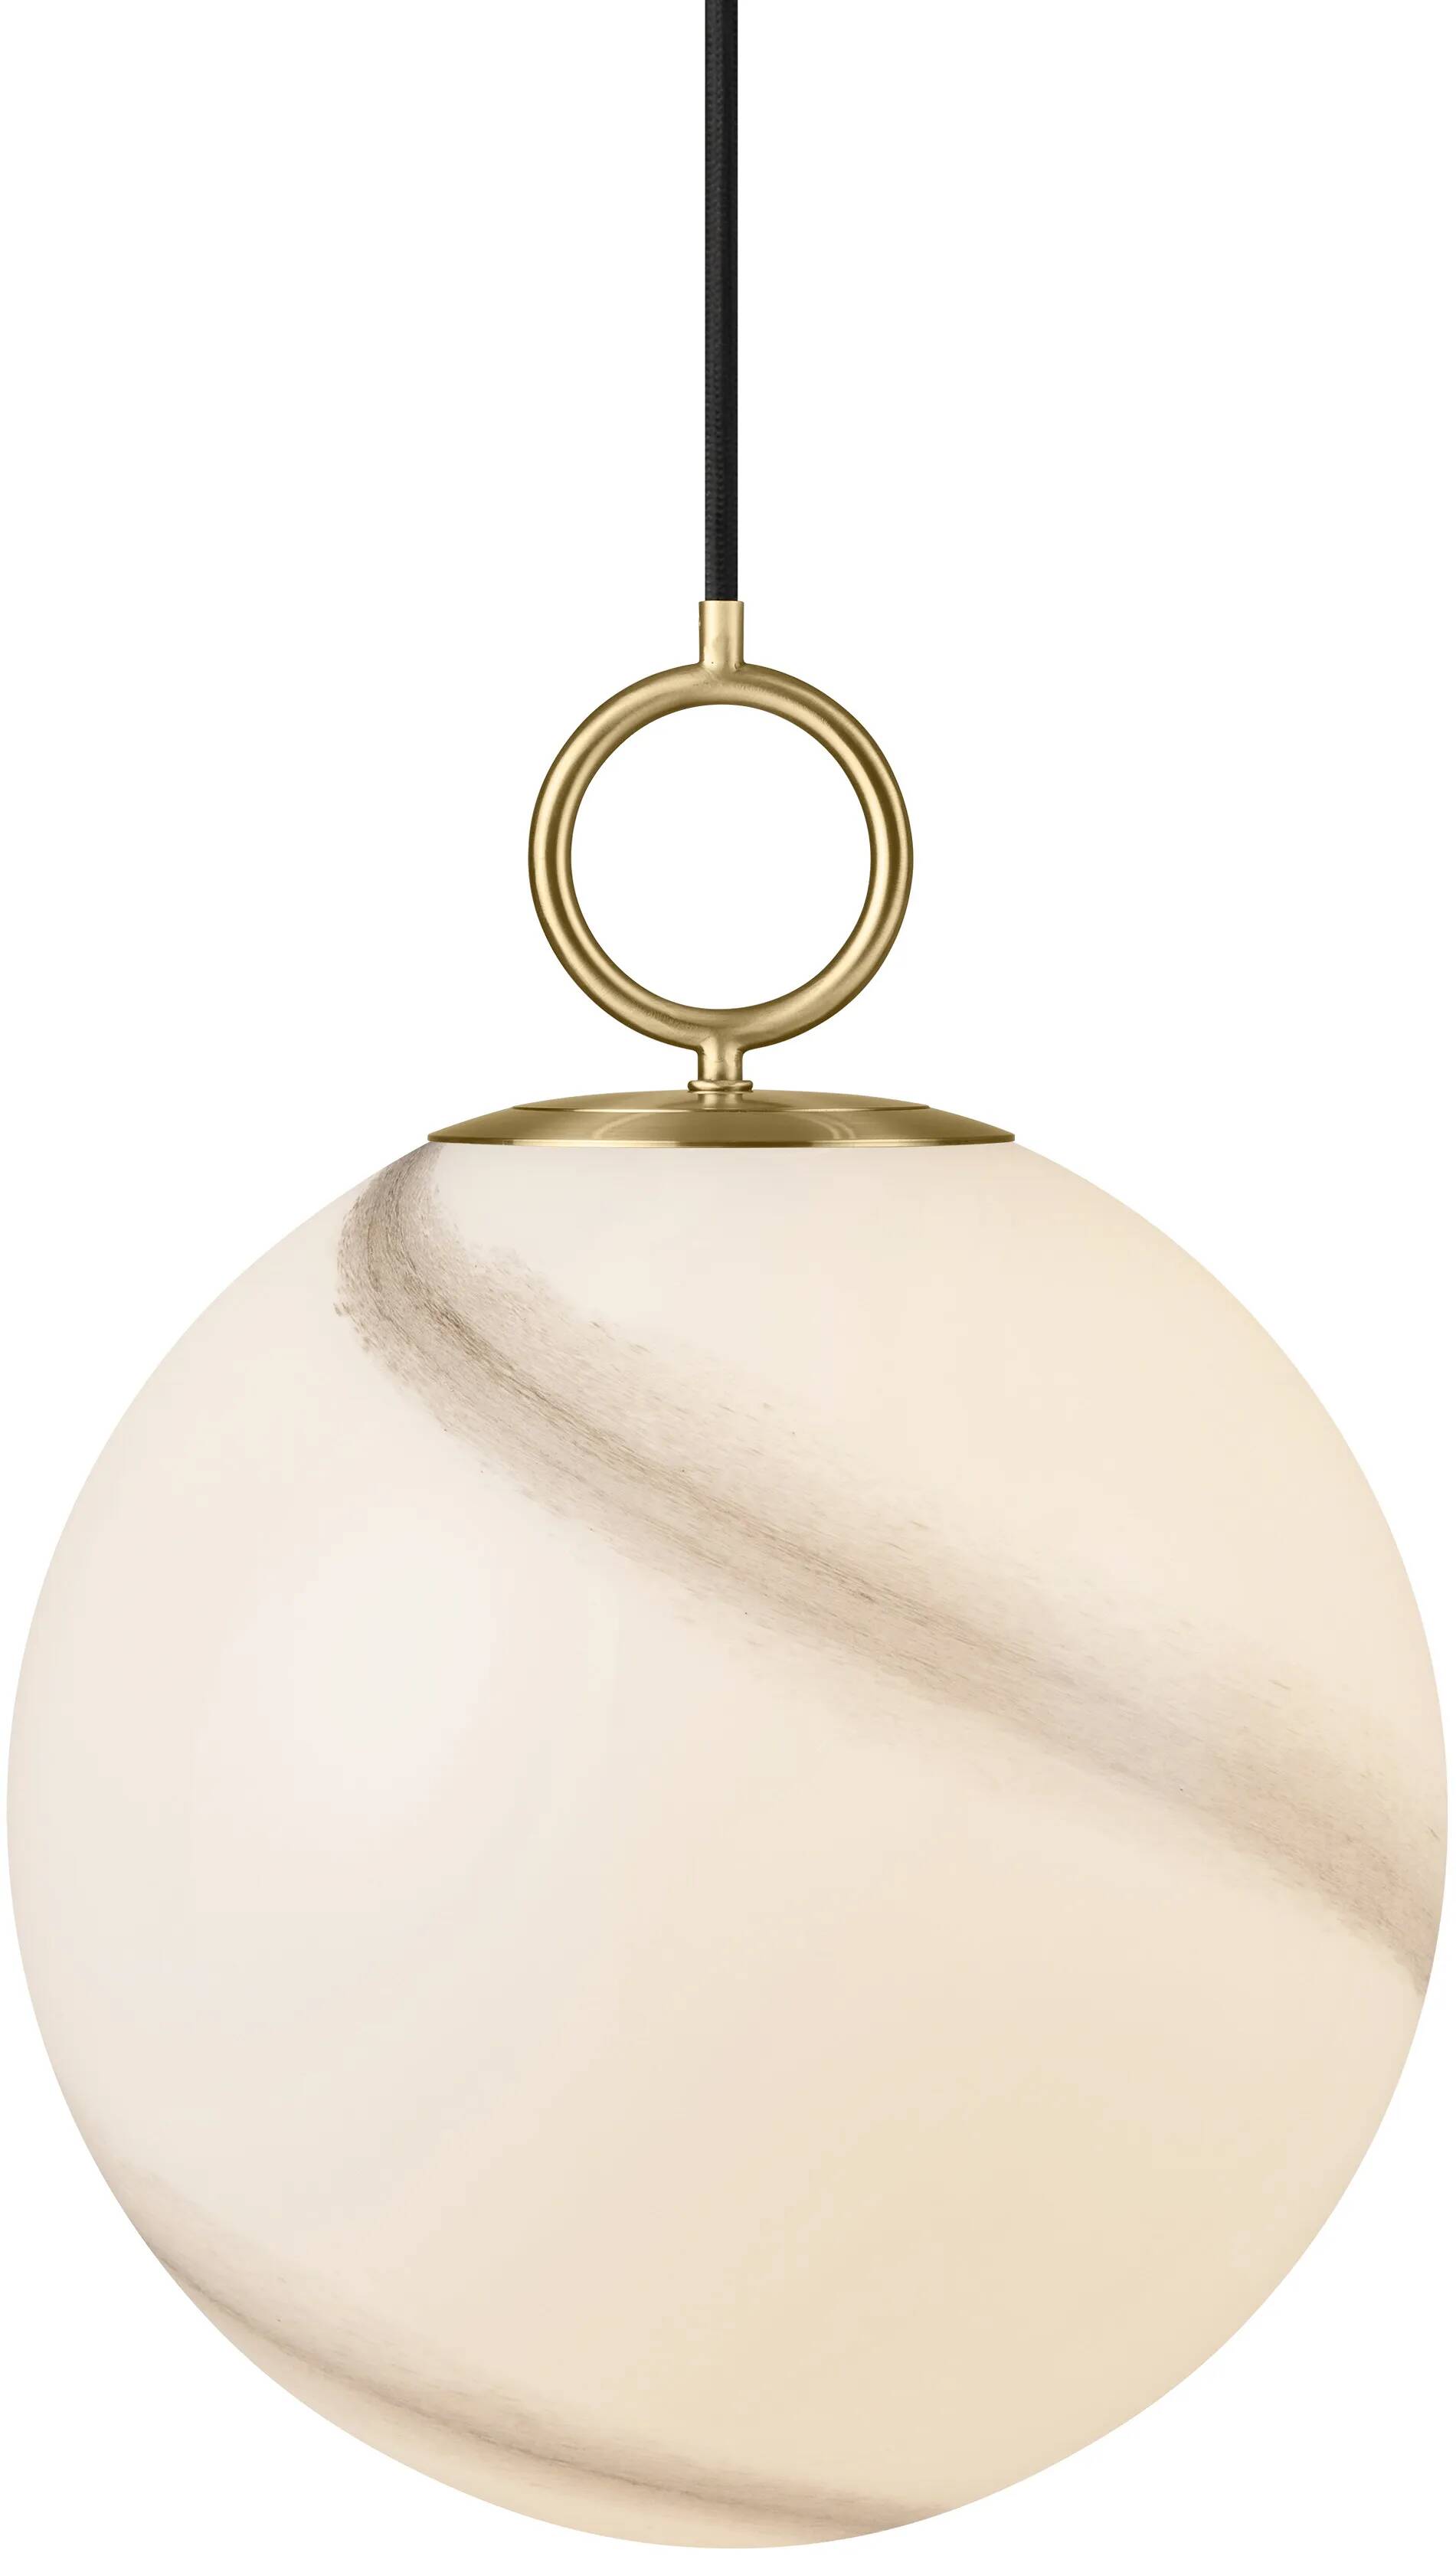 Lampe suspension en verre aspect marbre gris et métal laiton Ø30